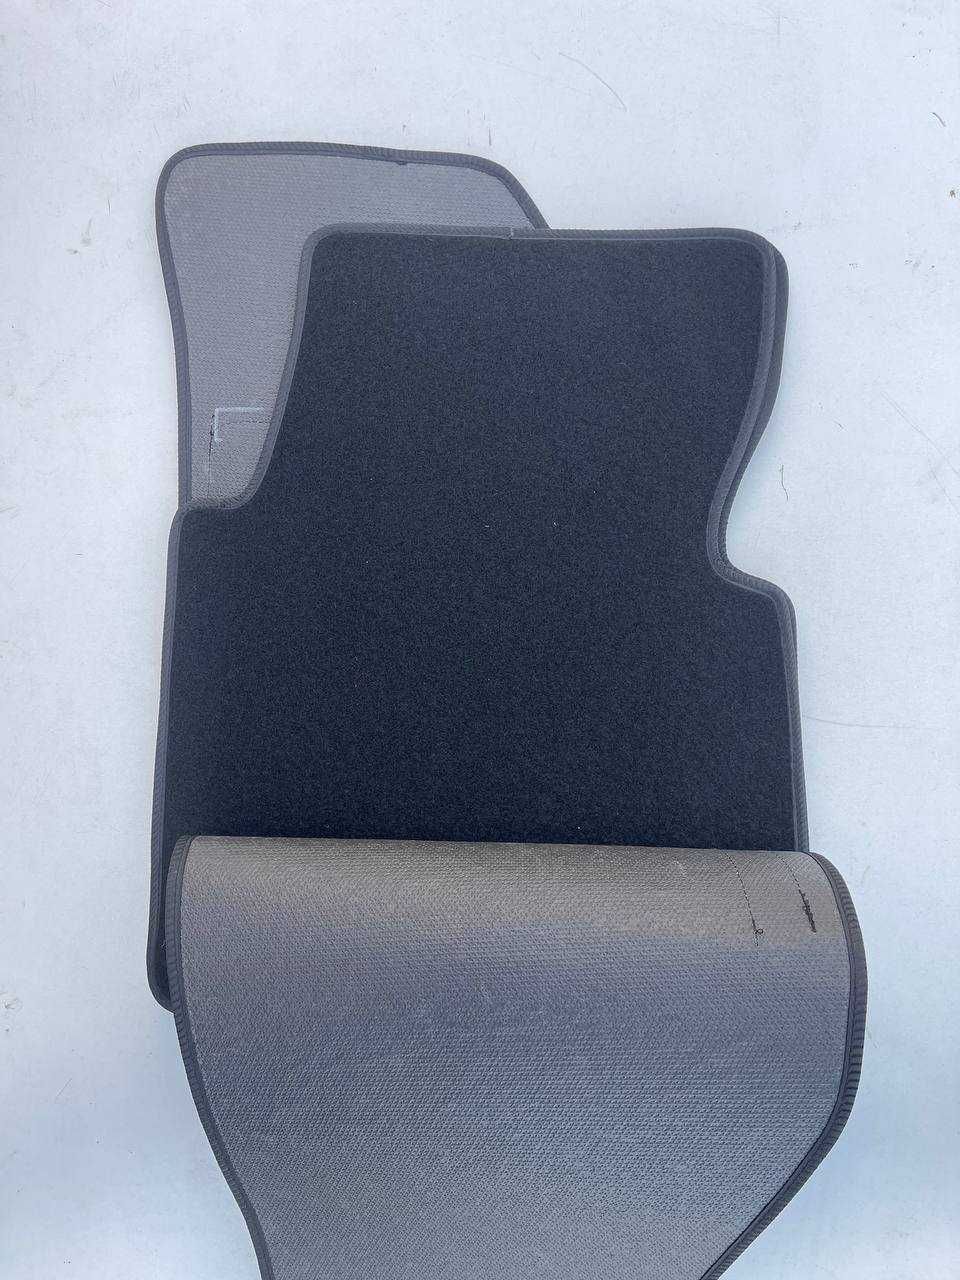 Ворсові коврики Hyundai Santa Fe (2001-2006) нові чорні